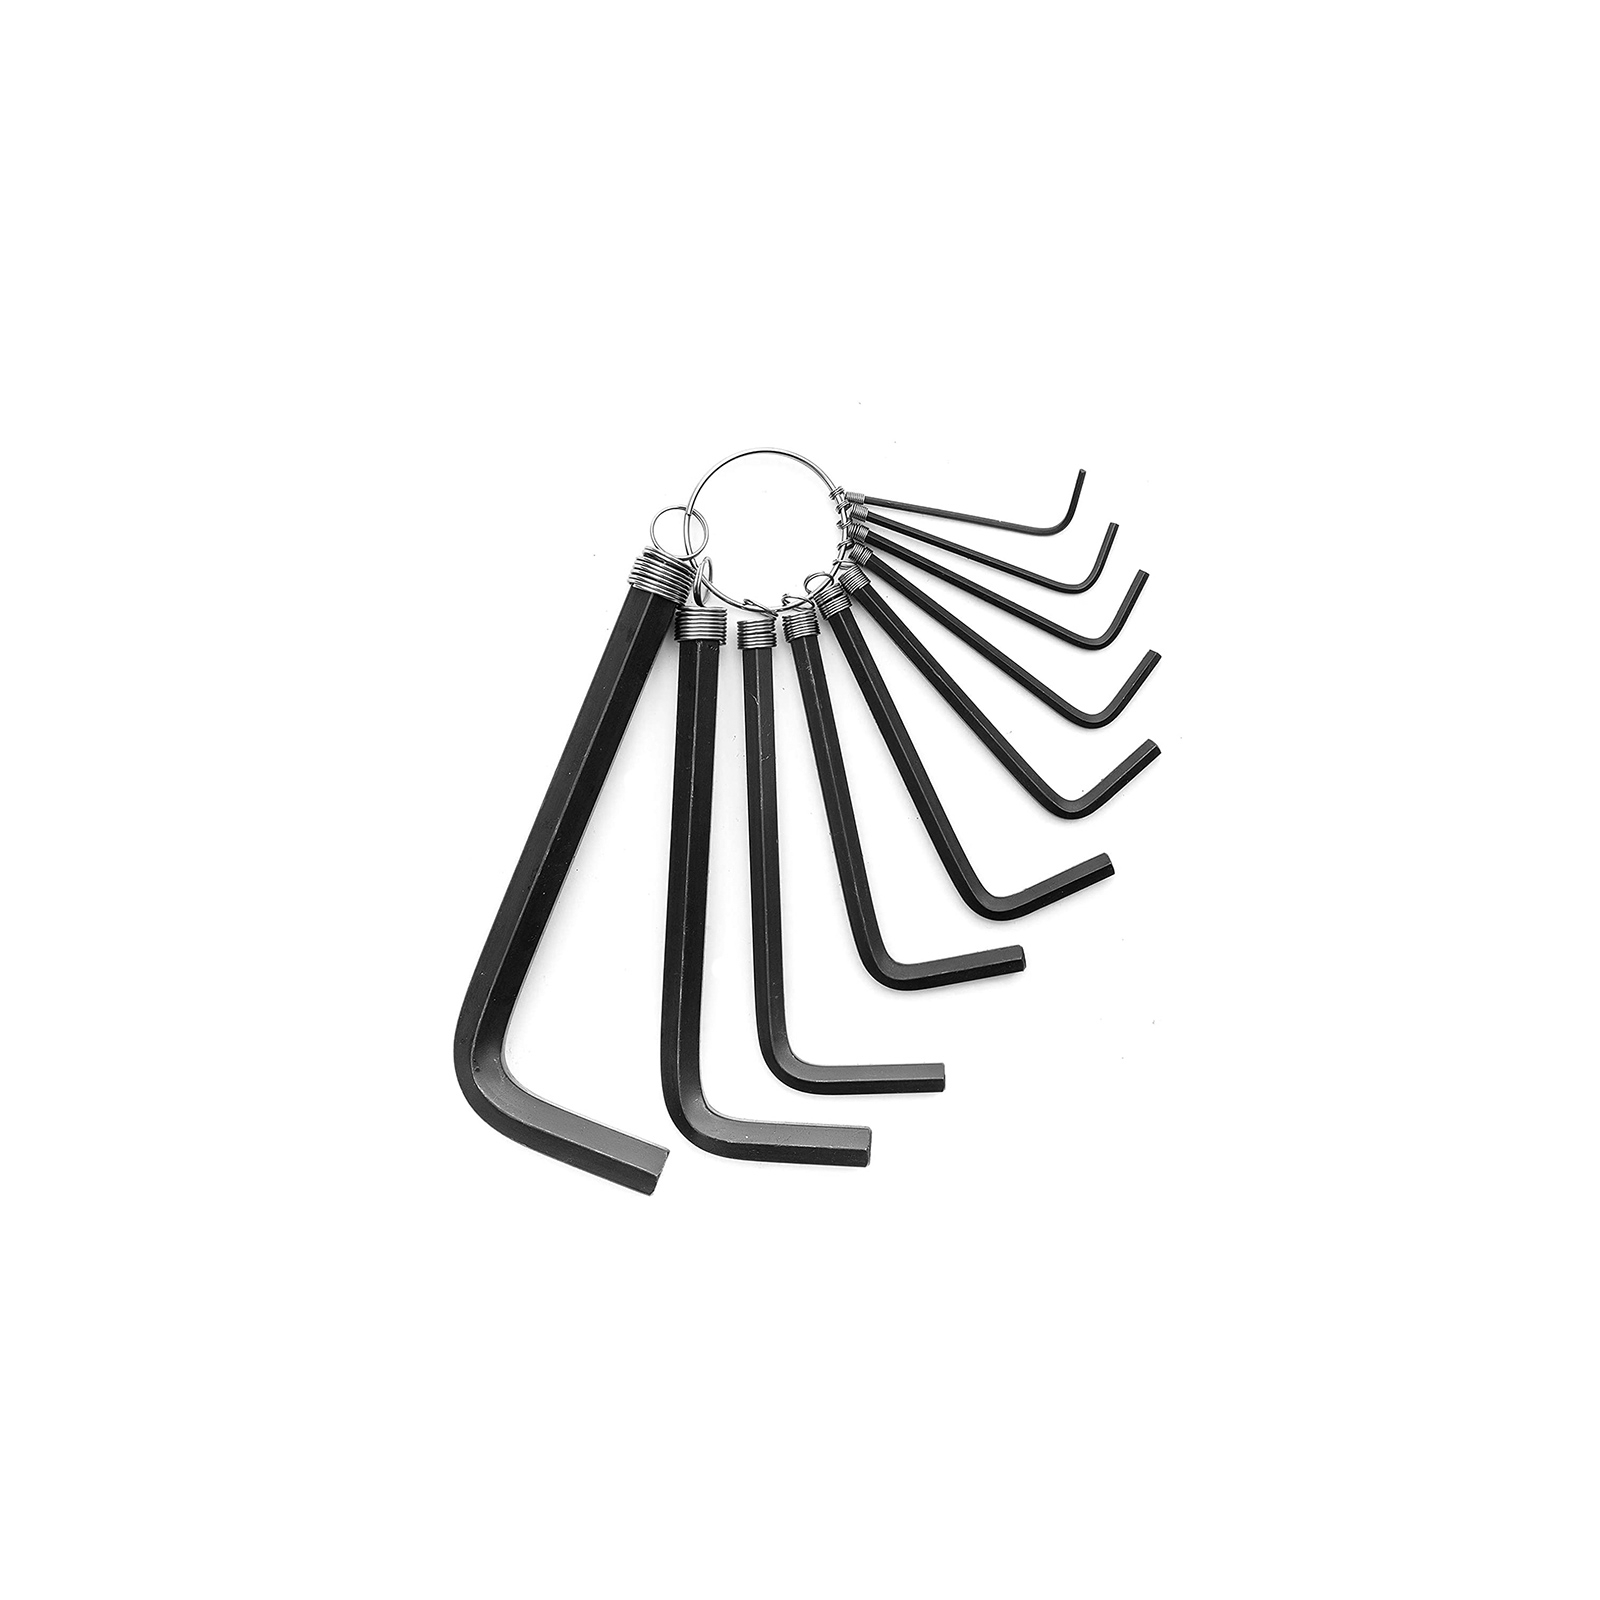 Набор инструментов Tolsen Г-образных шестигранных ключей 10 шт на кольце (20051)